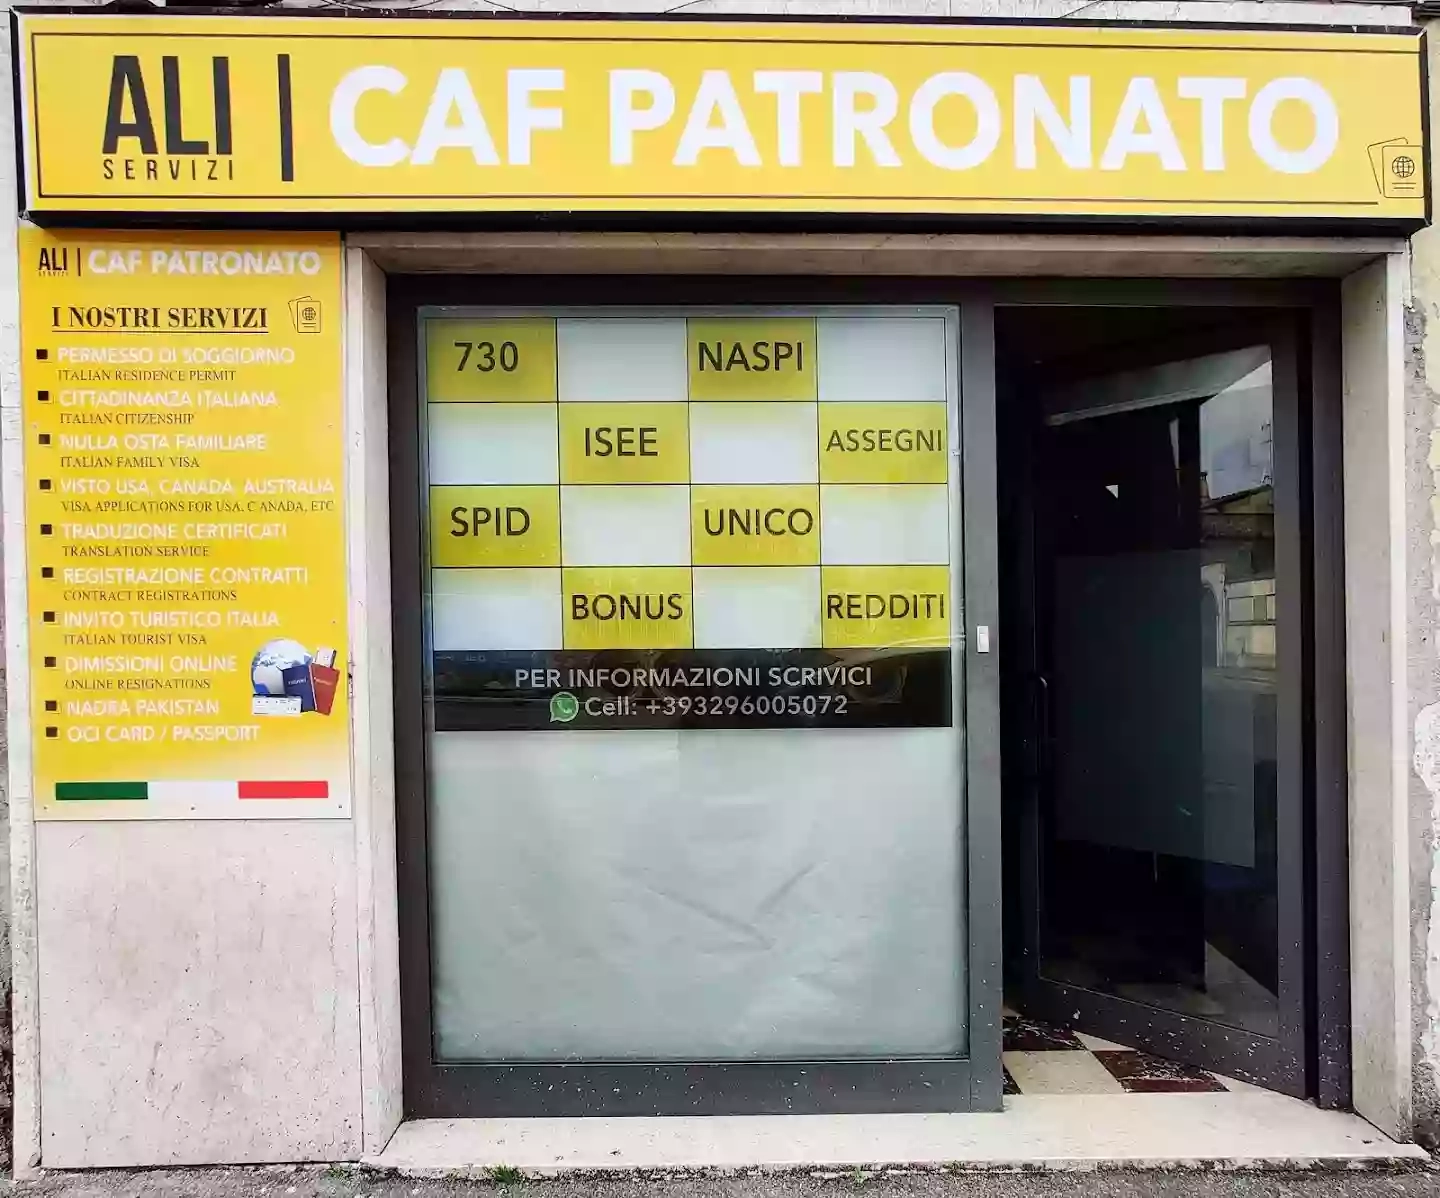 Ali Servizi | Caf Patronato